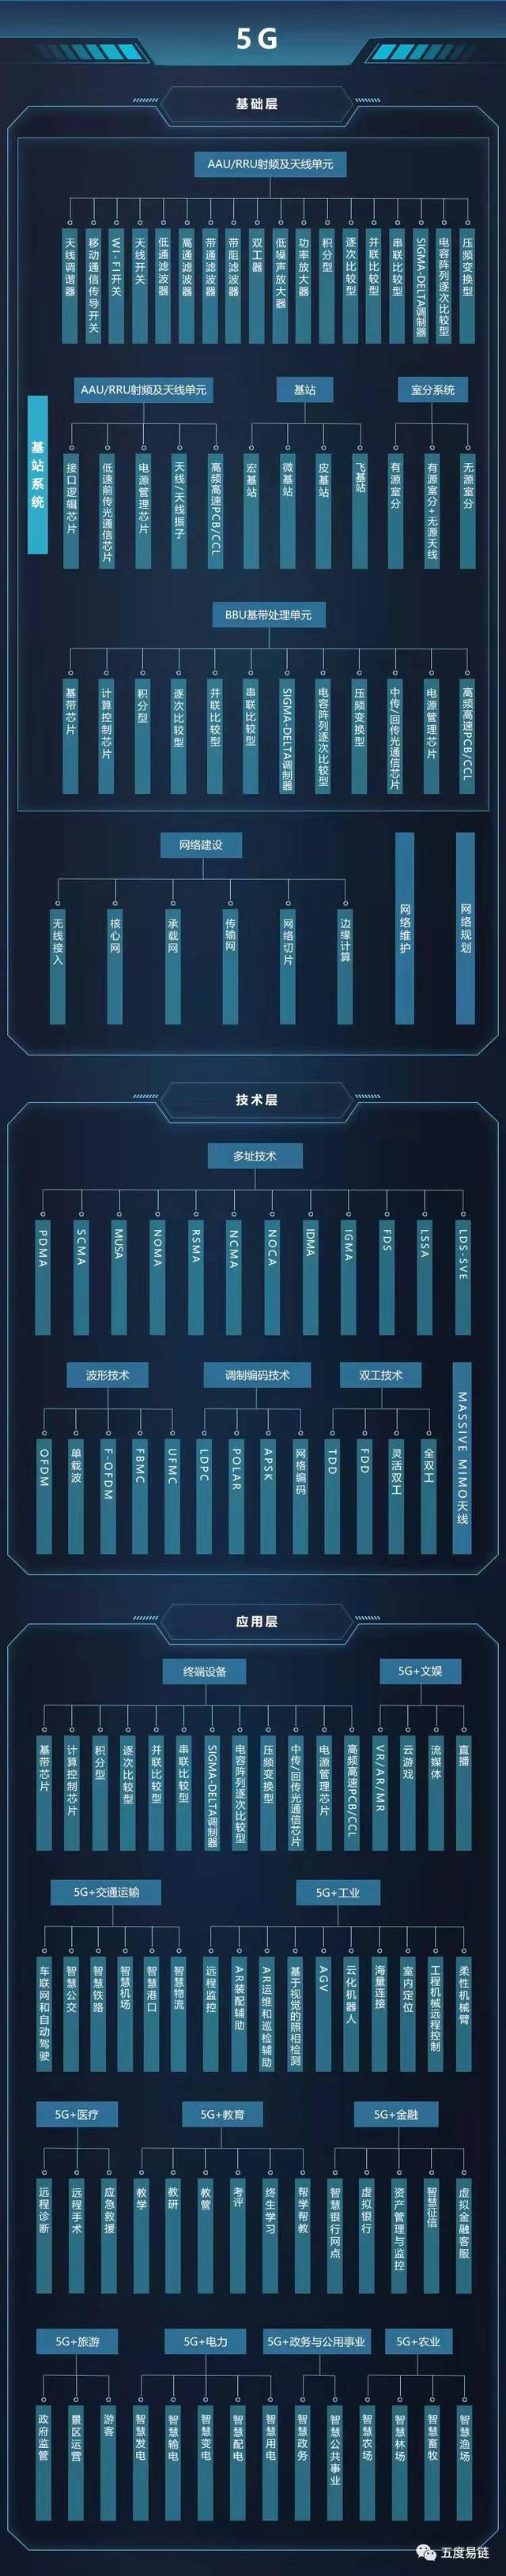 产业链图谱：2021年中国5G产业链图谱｜产业链全景图